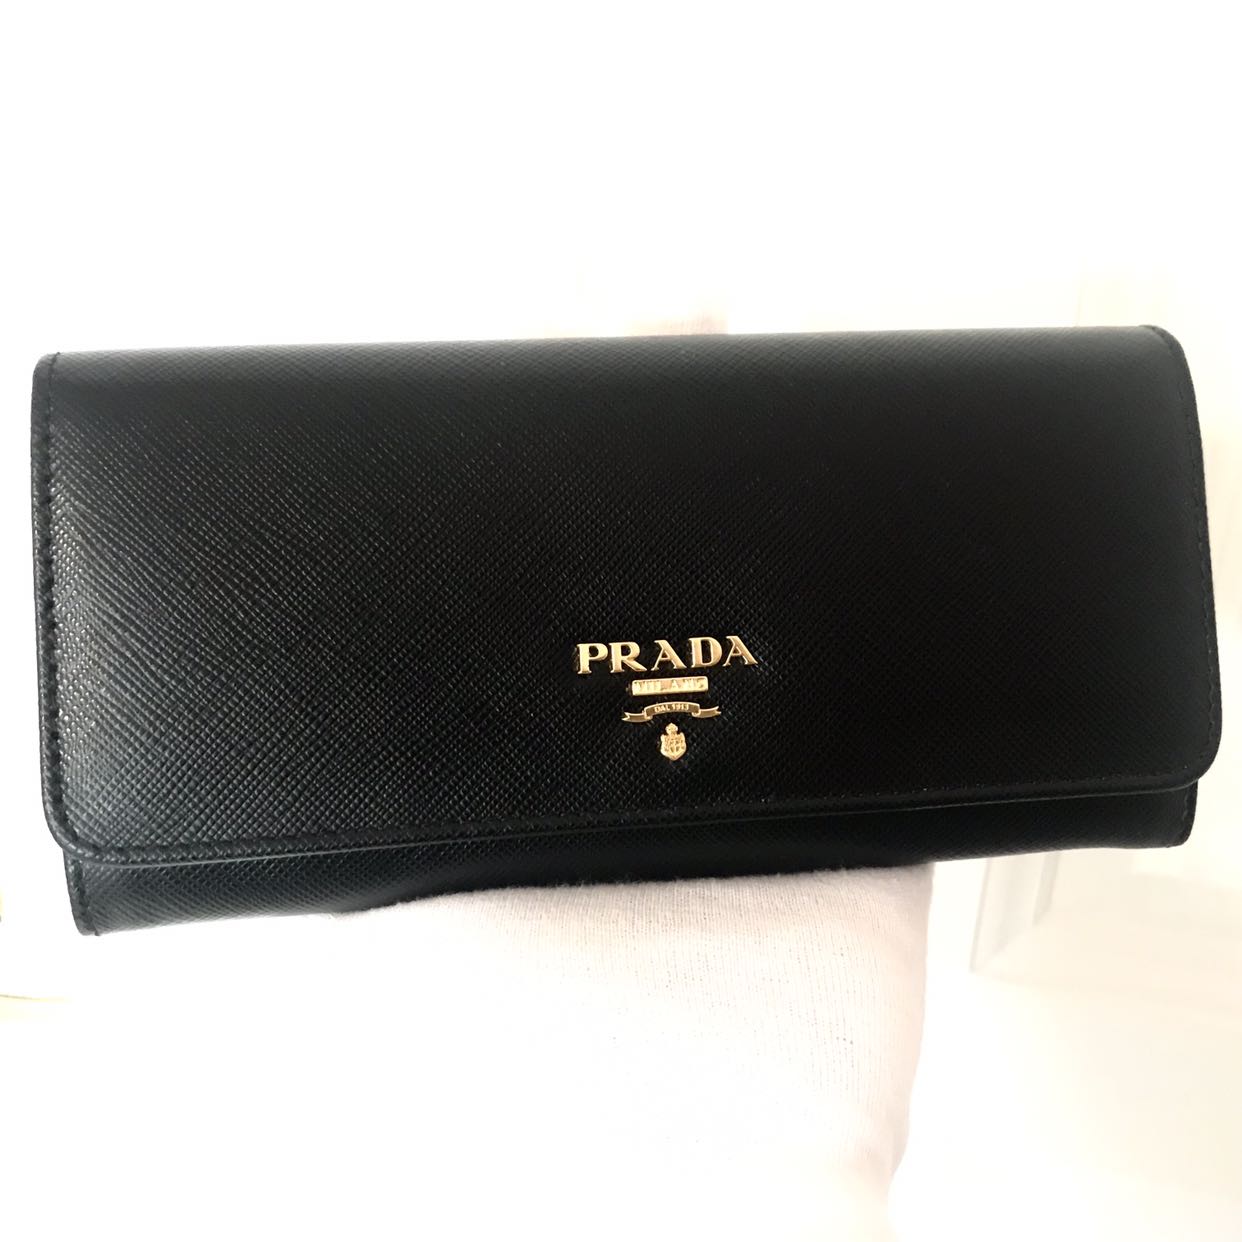 prada black saffiano wallet